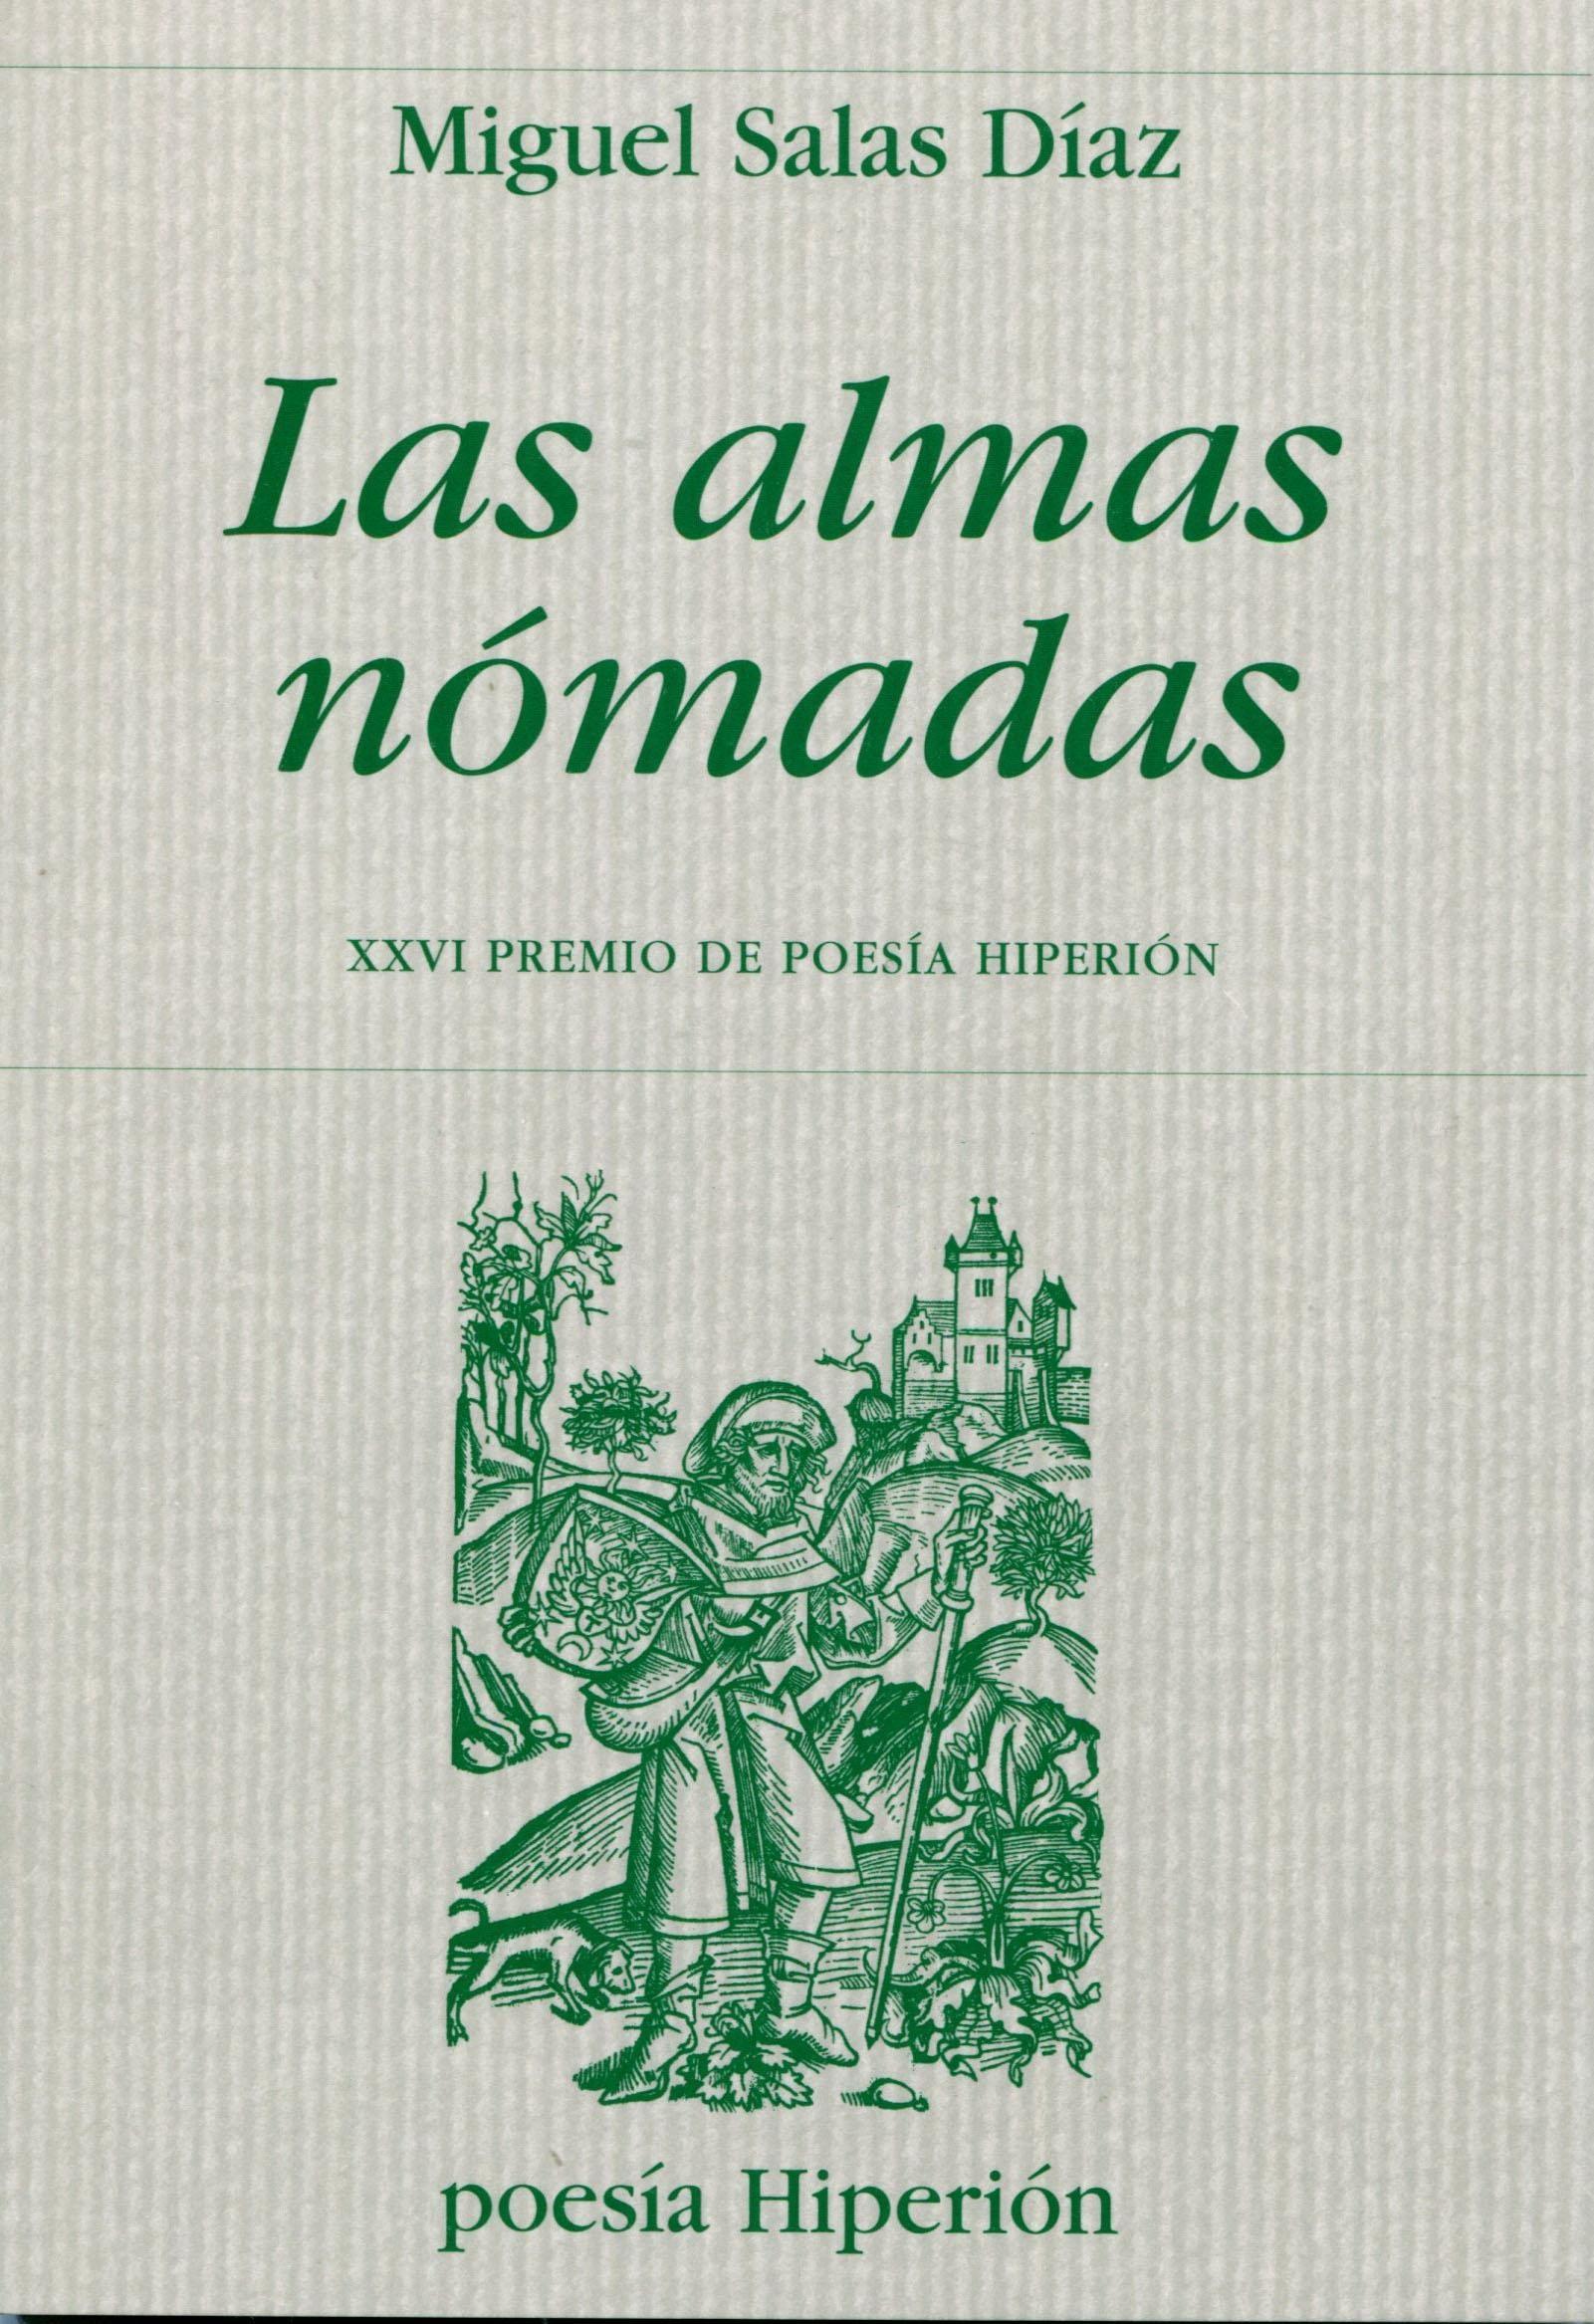 Almas nómadas, Las "XXVI Premio de poesía Hiperión". 